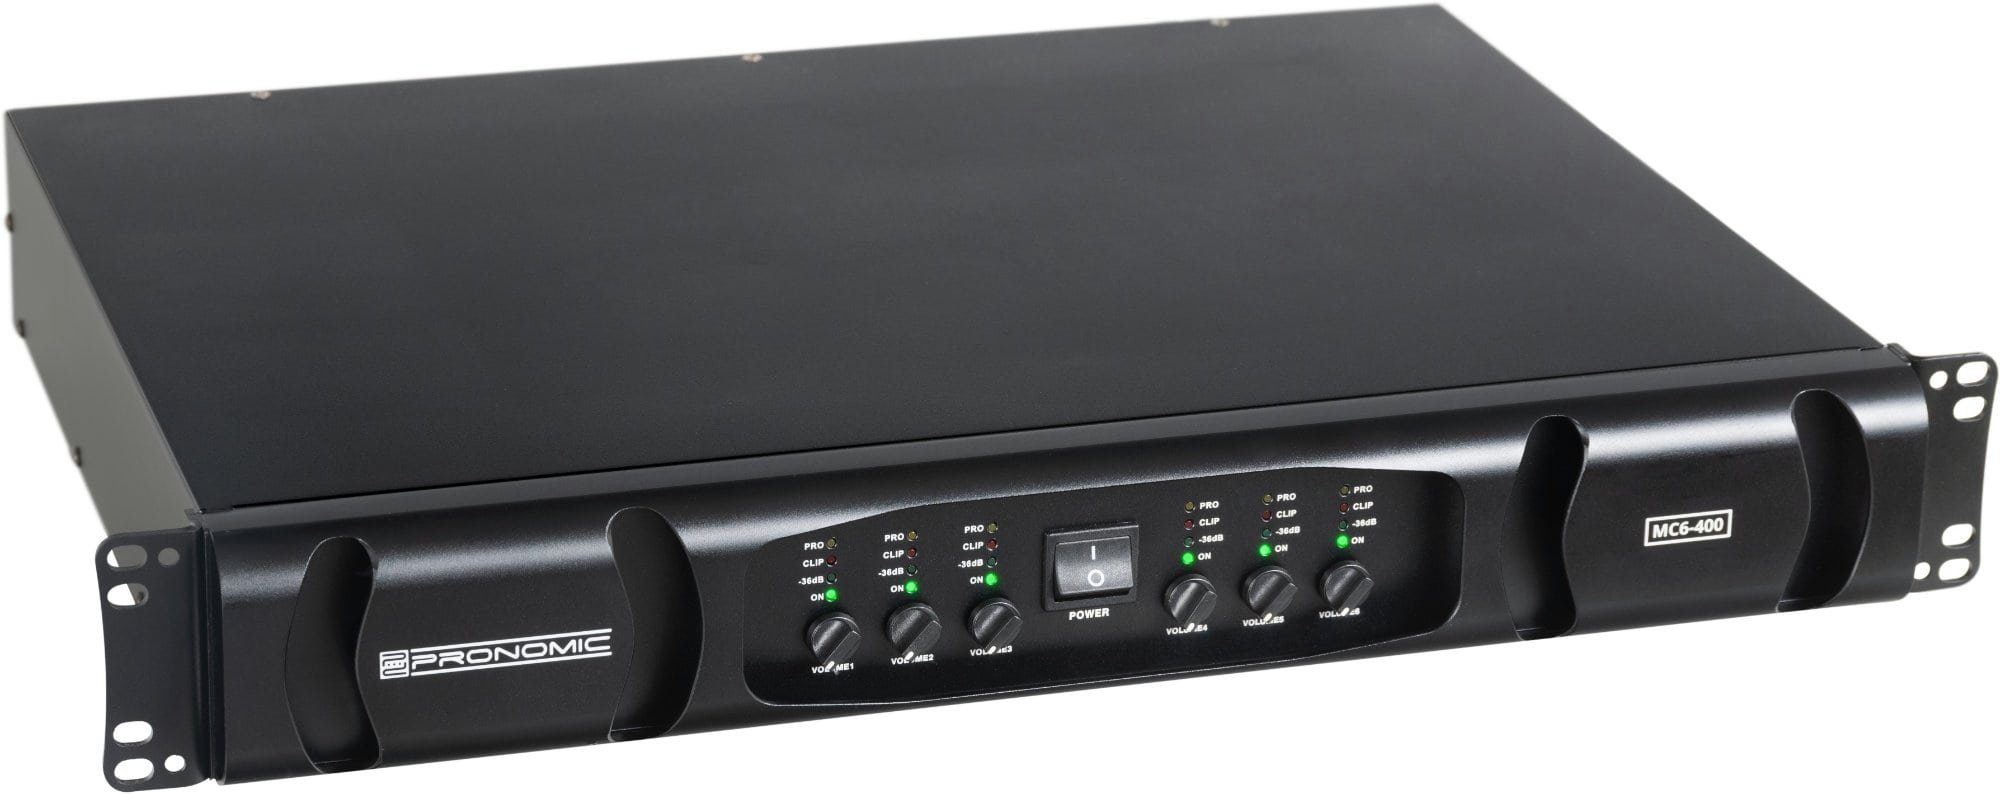 Pronomic MC6-400 Watt 6, Schaltung Endstufe 6x Grenzfrequenz) 600 Endstufe einstellbarer Kanäle: 3600 & W, (Anzahl flexibler mit Audioverstärker